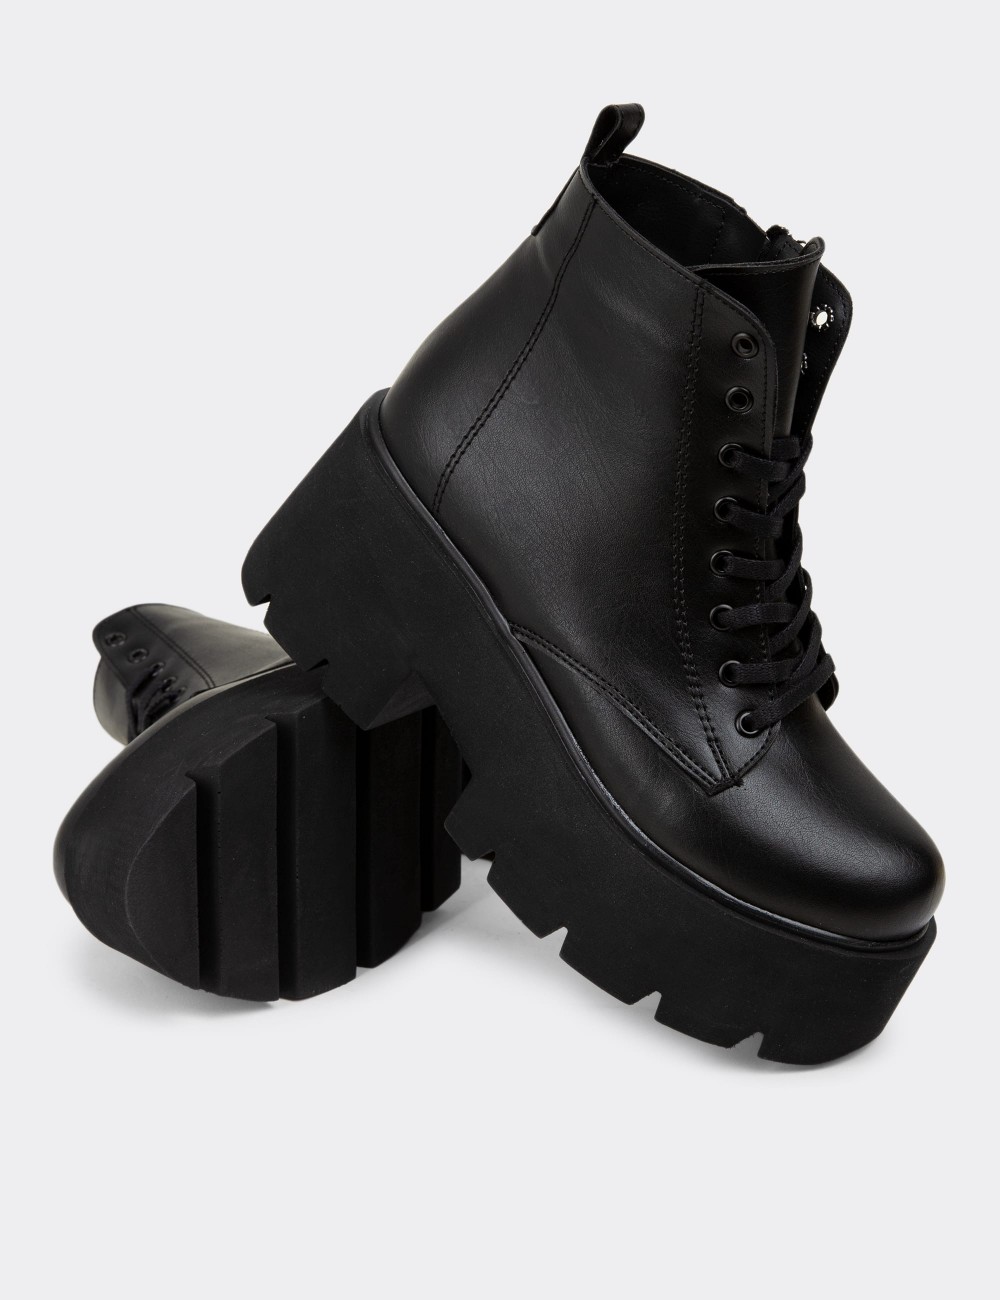 Black Boots - K1600ZSYHE01